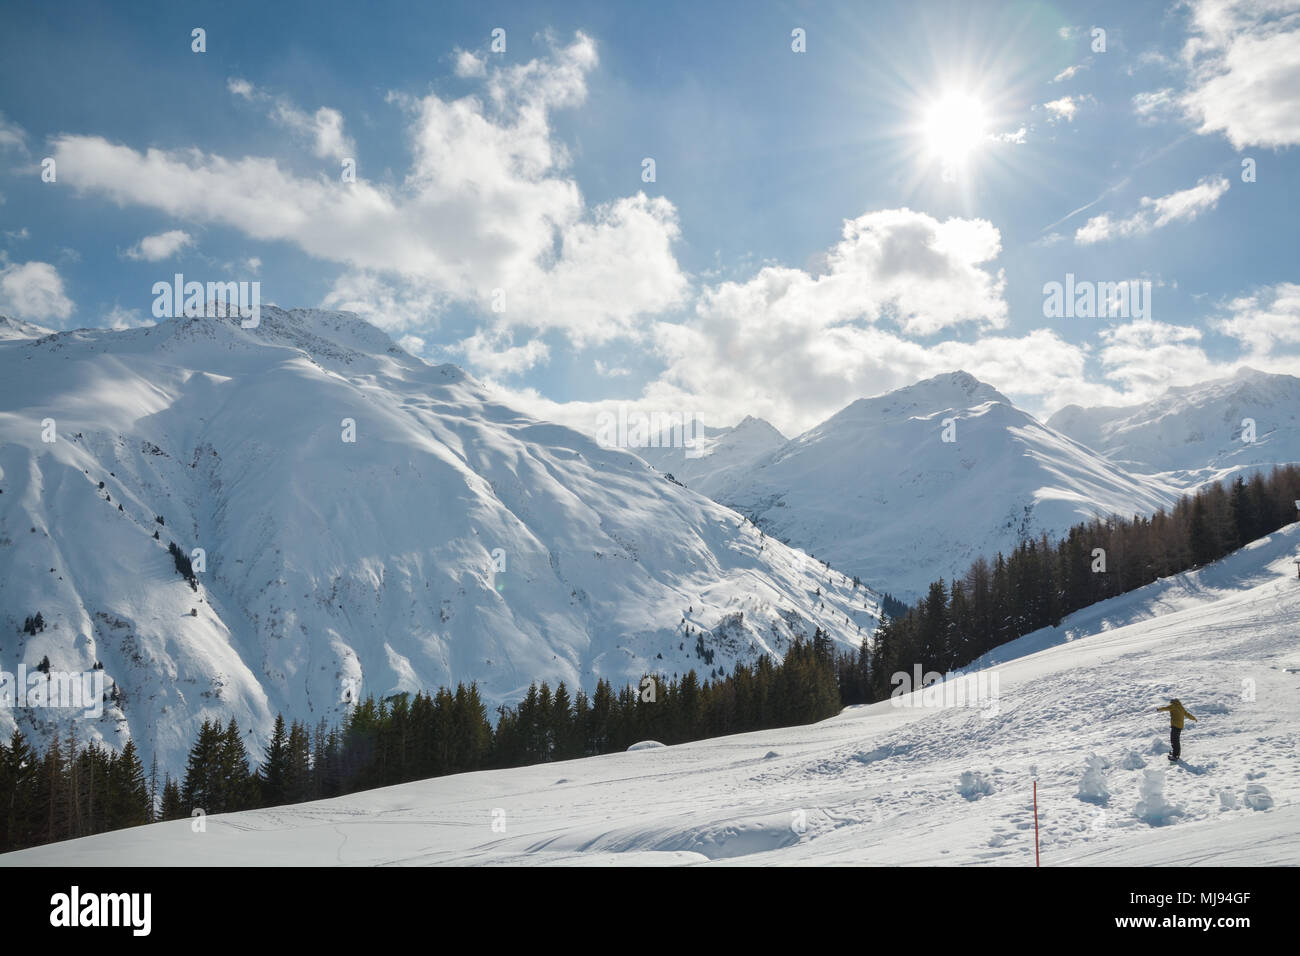 SEDRUN, Svizzera - 9 febbraio 2018: Snowboarder a cavallo lungo il pendio sulla bella e soleggiata giornata invernale in Sedrun ski resort in Svizzera Foto Stock